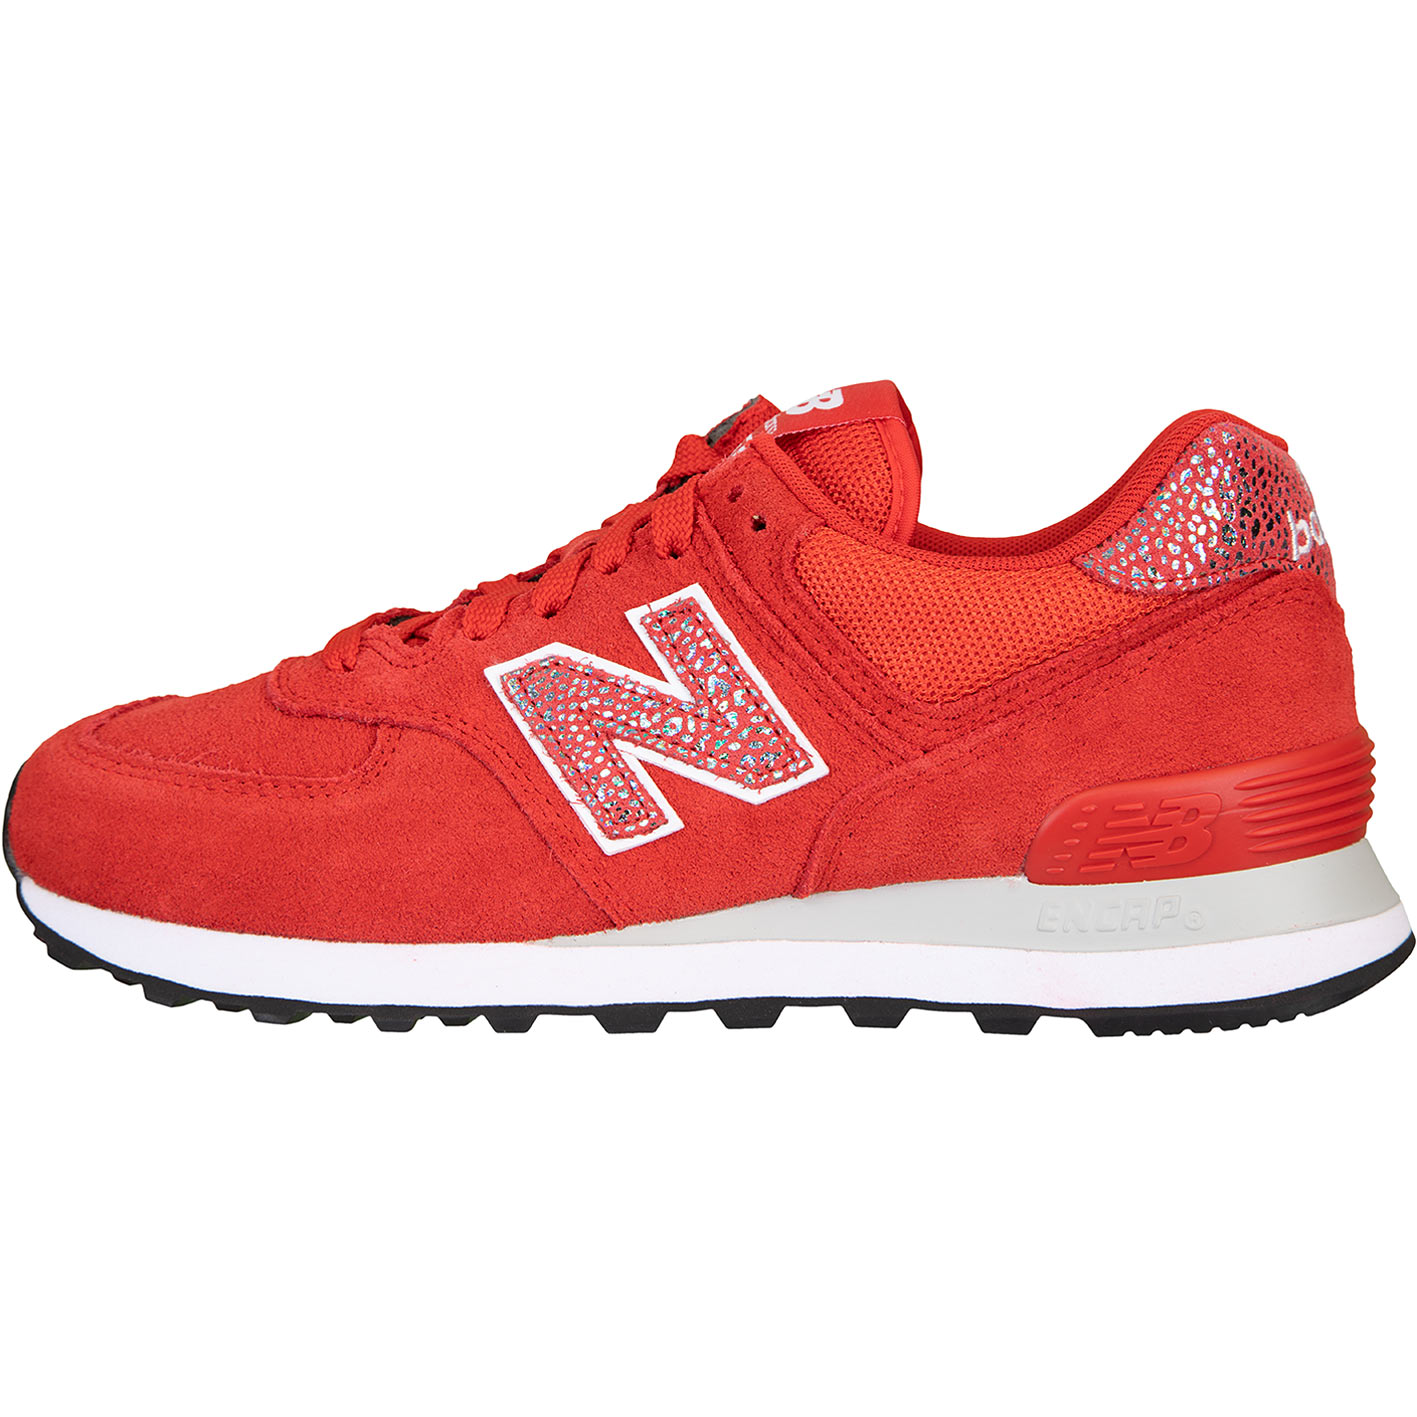 ☆ New Balance NB 574 Damen Sneaker rot - hier bestellen!